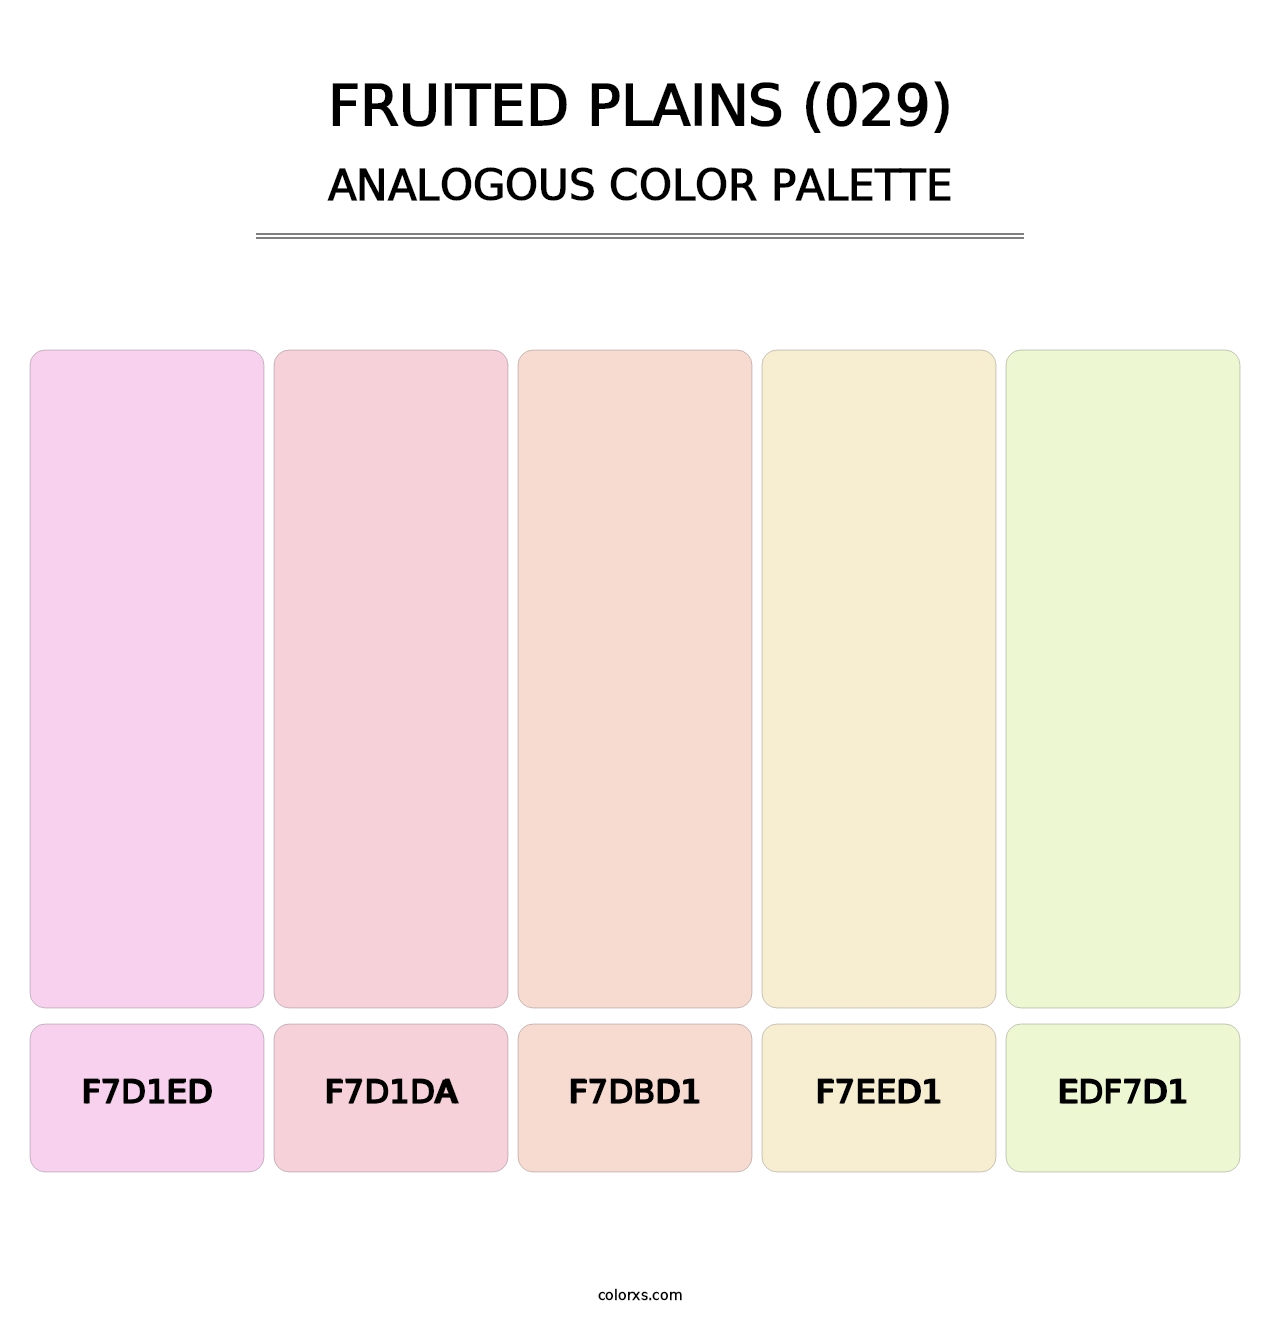 Fruited Plains (029) - Analogous Color Palette